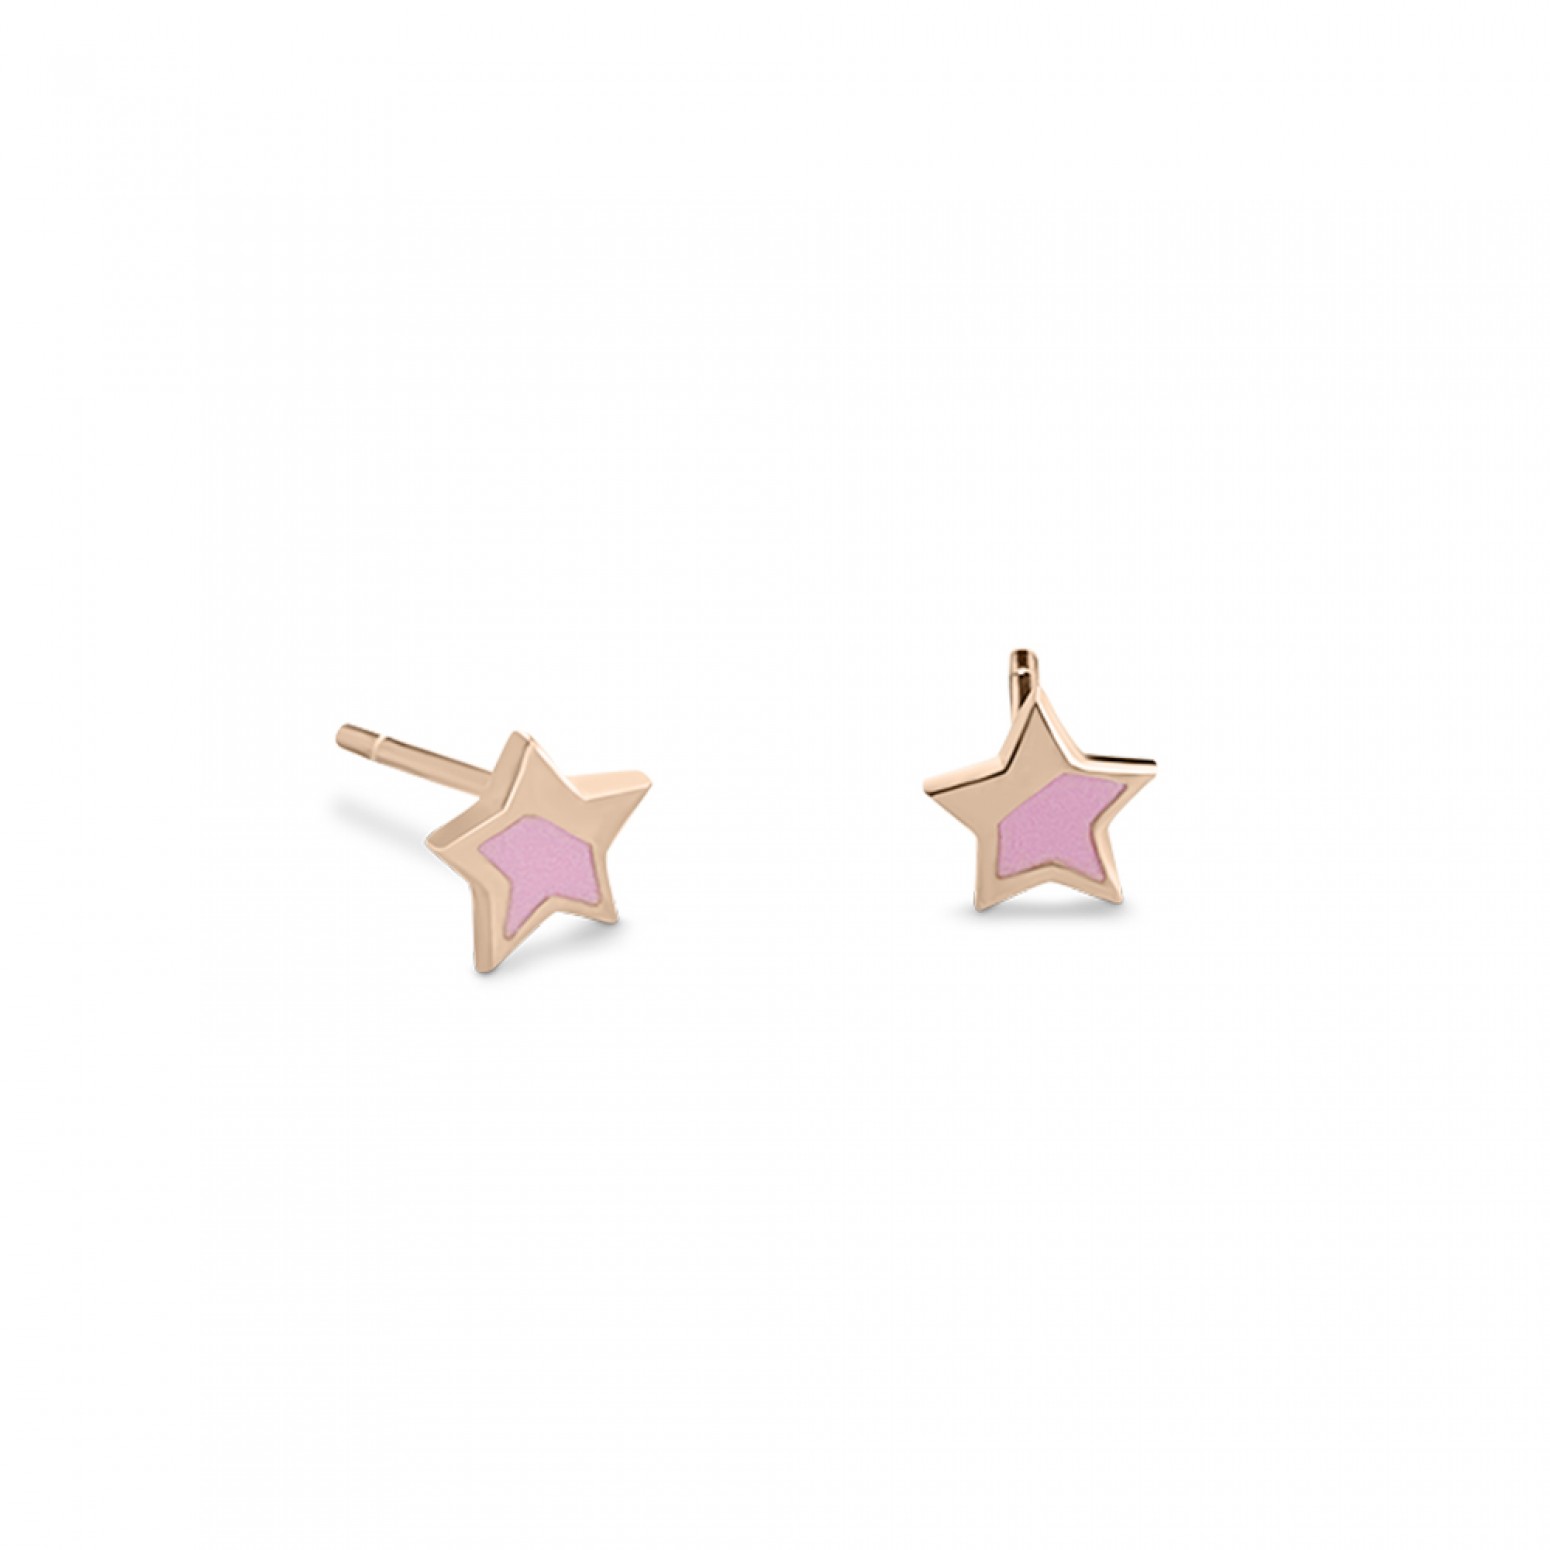 Παιδικά σκουλαρίκια αστέρια Κ9 ροζ χρυσό με σμάλτο, ps0143 ΣΚΟΥΛΑΡΙΚΙΑ Κοσμηματα - chrilia.gr